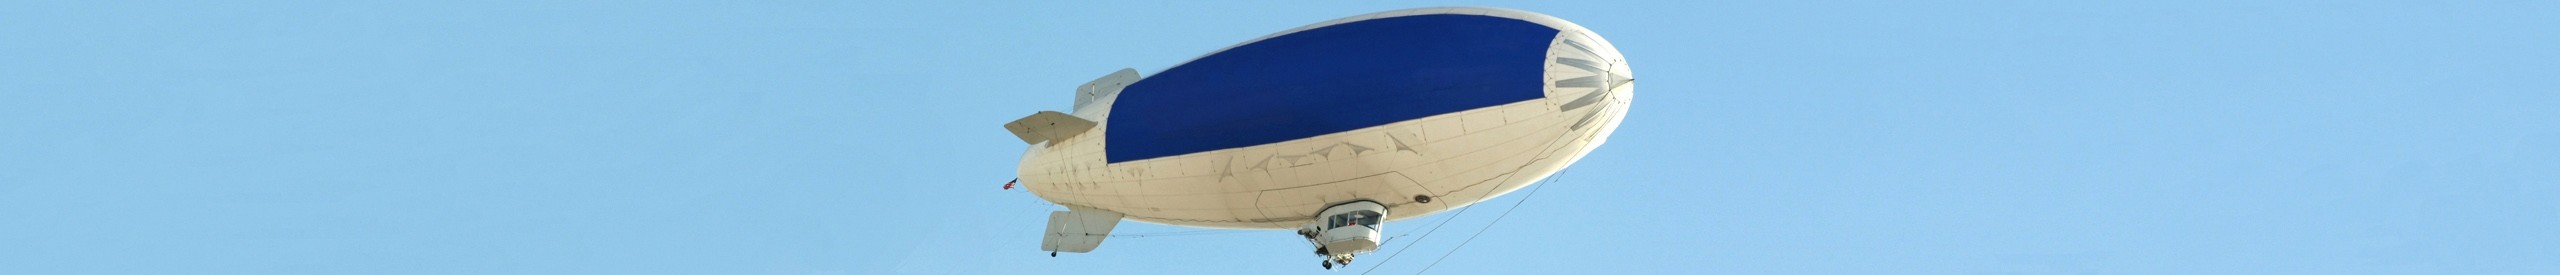 Zeppelin Luftschiff 